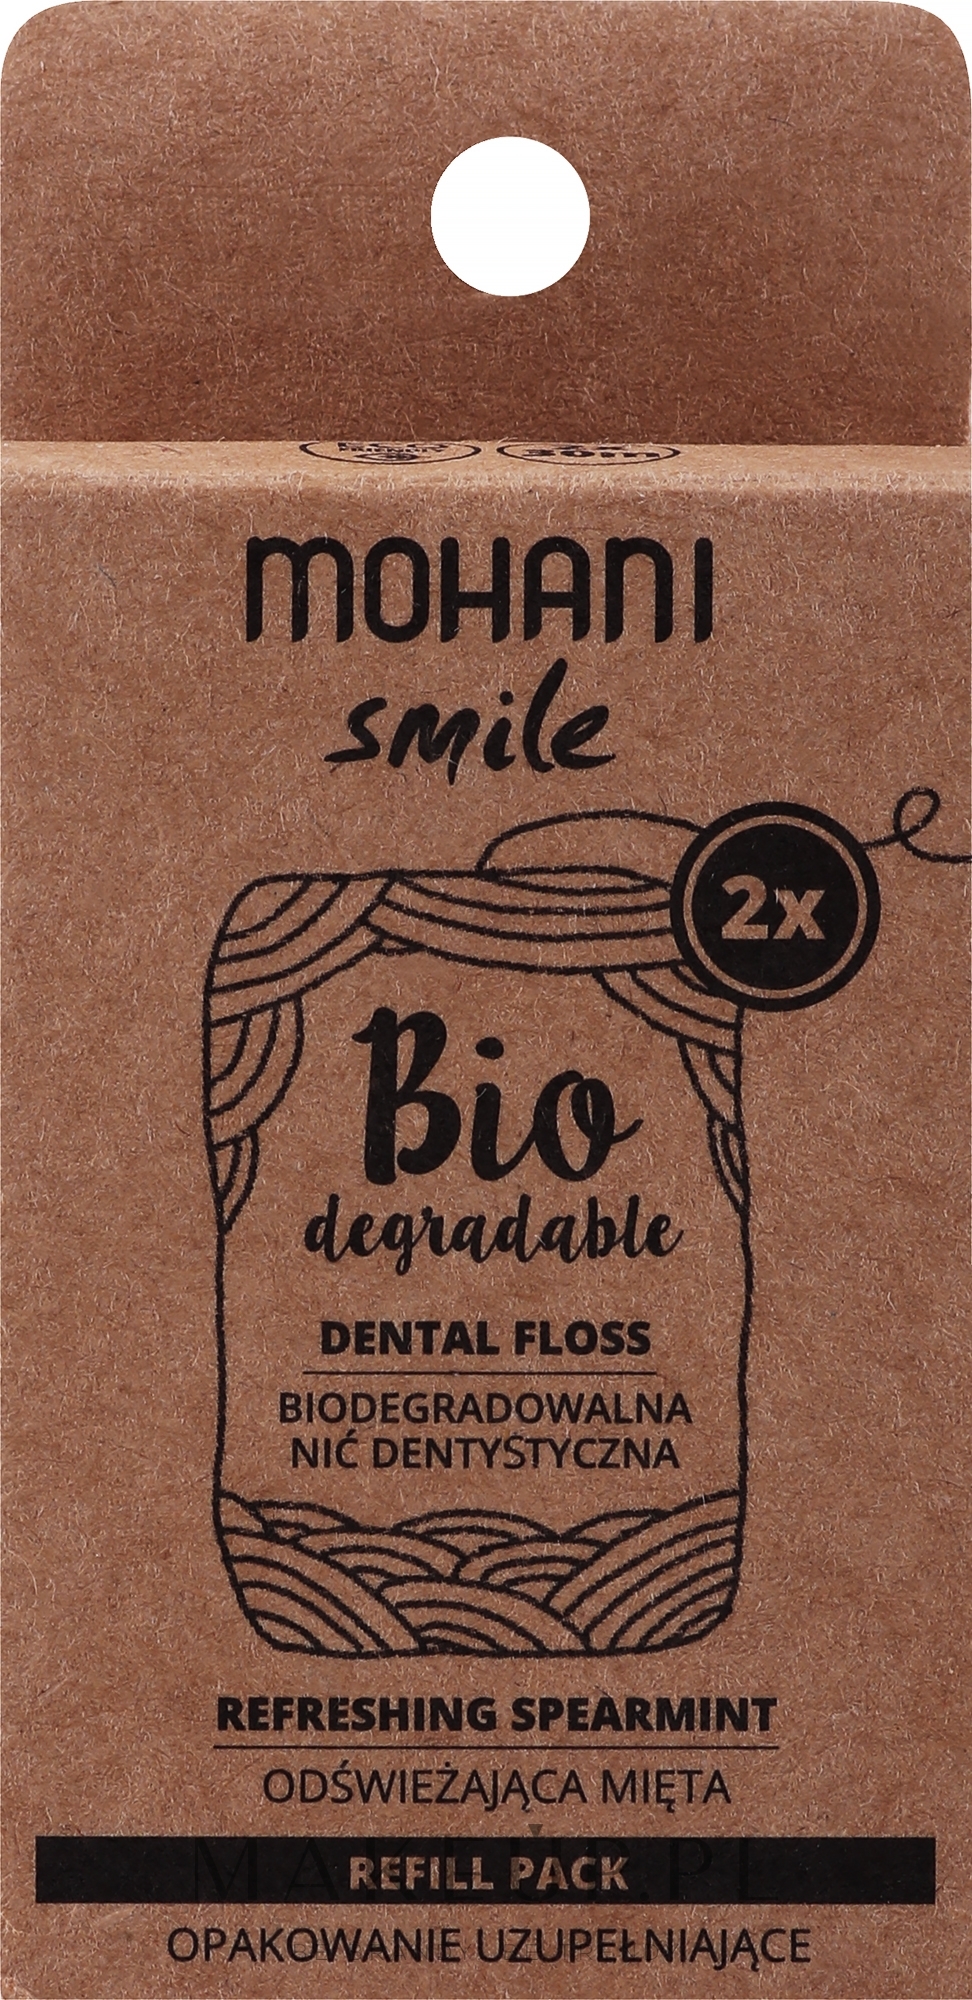 Biodegradowalna nić dentystyczna Odświeżająca mięta - Mohani Smile — Zdjęcie 2 szt.